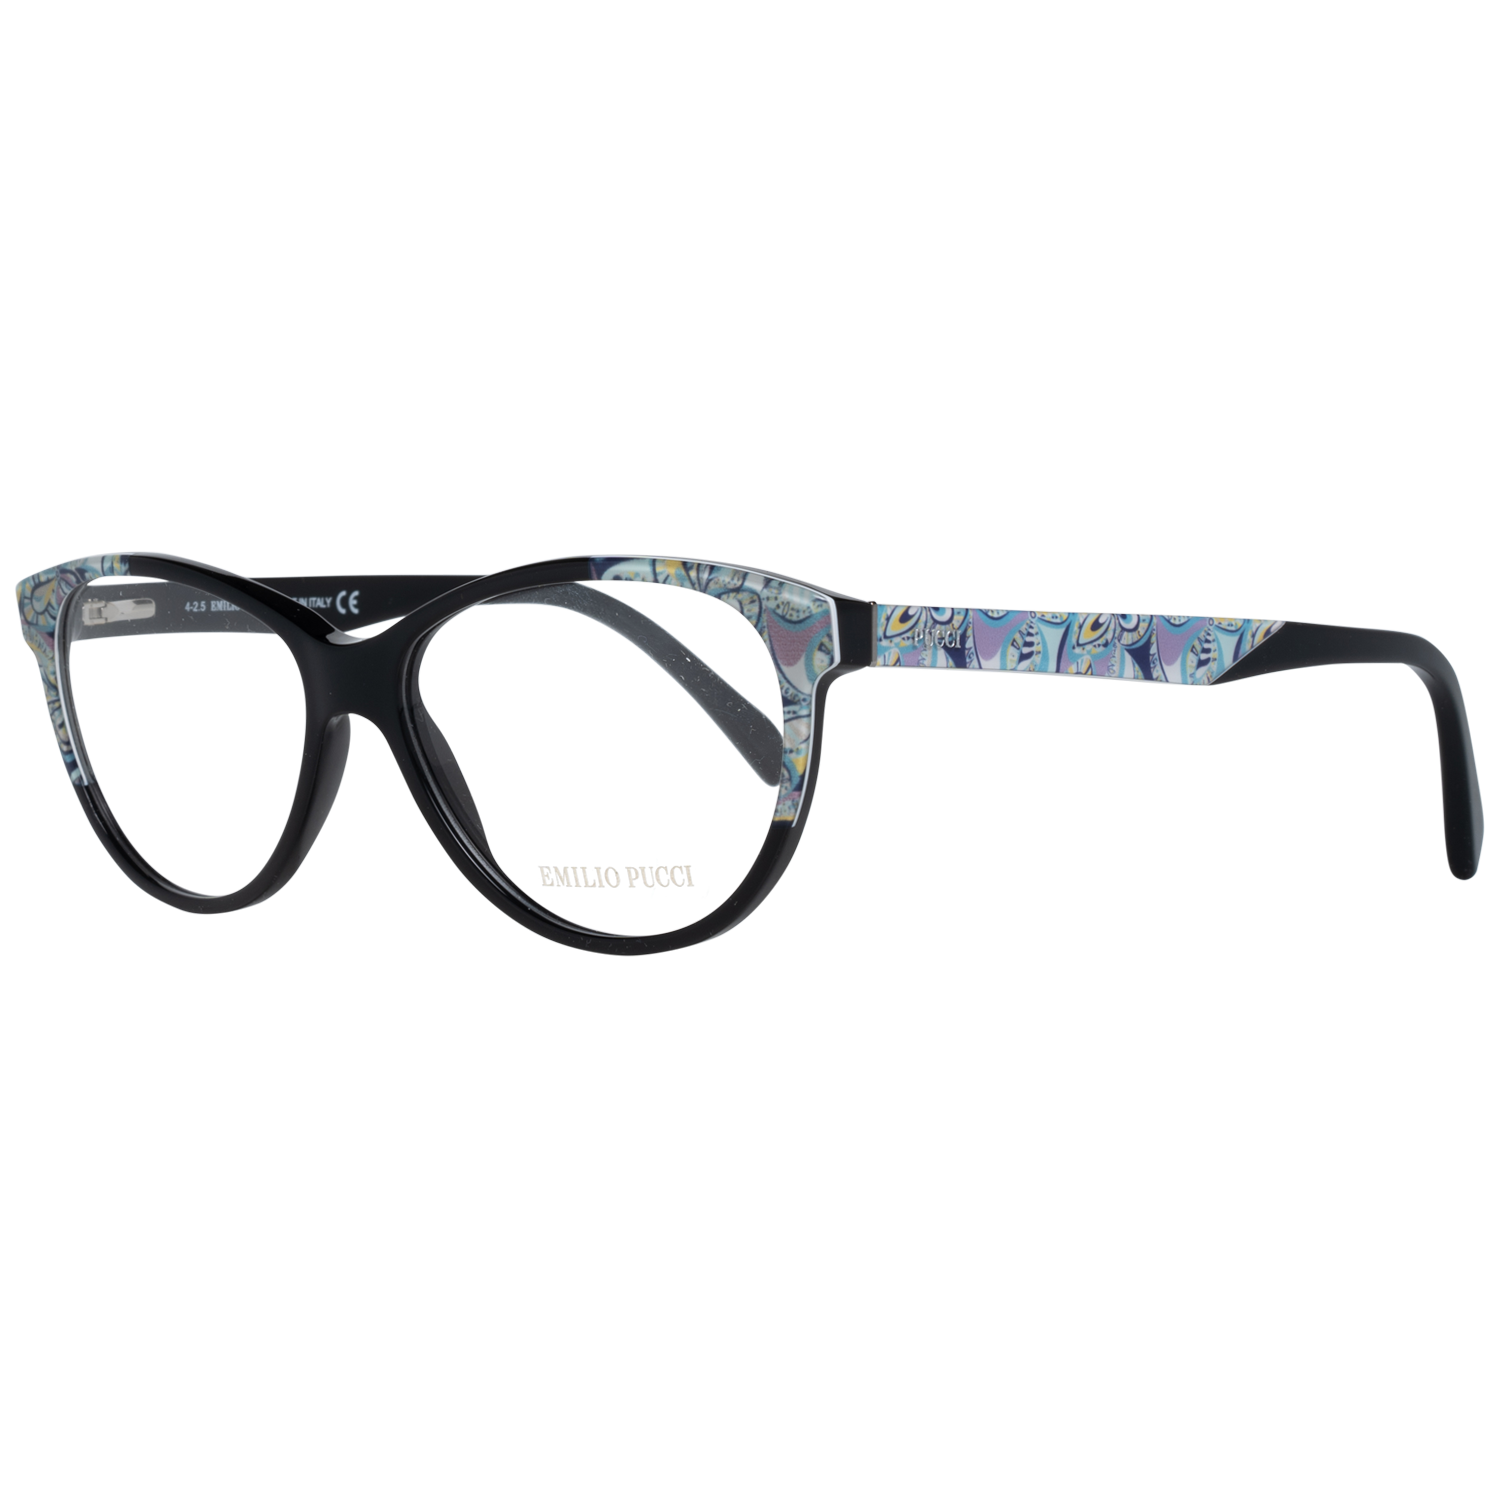 Emilio Pucci Frames Emilio Pucci Optical Frame EP5022 001 54 Eyeglasses Eyewear UK USA Australia 